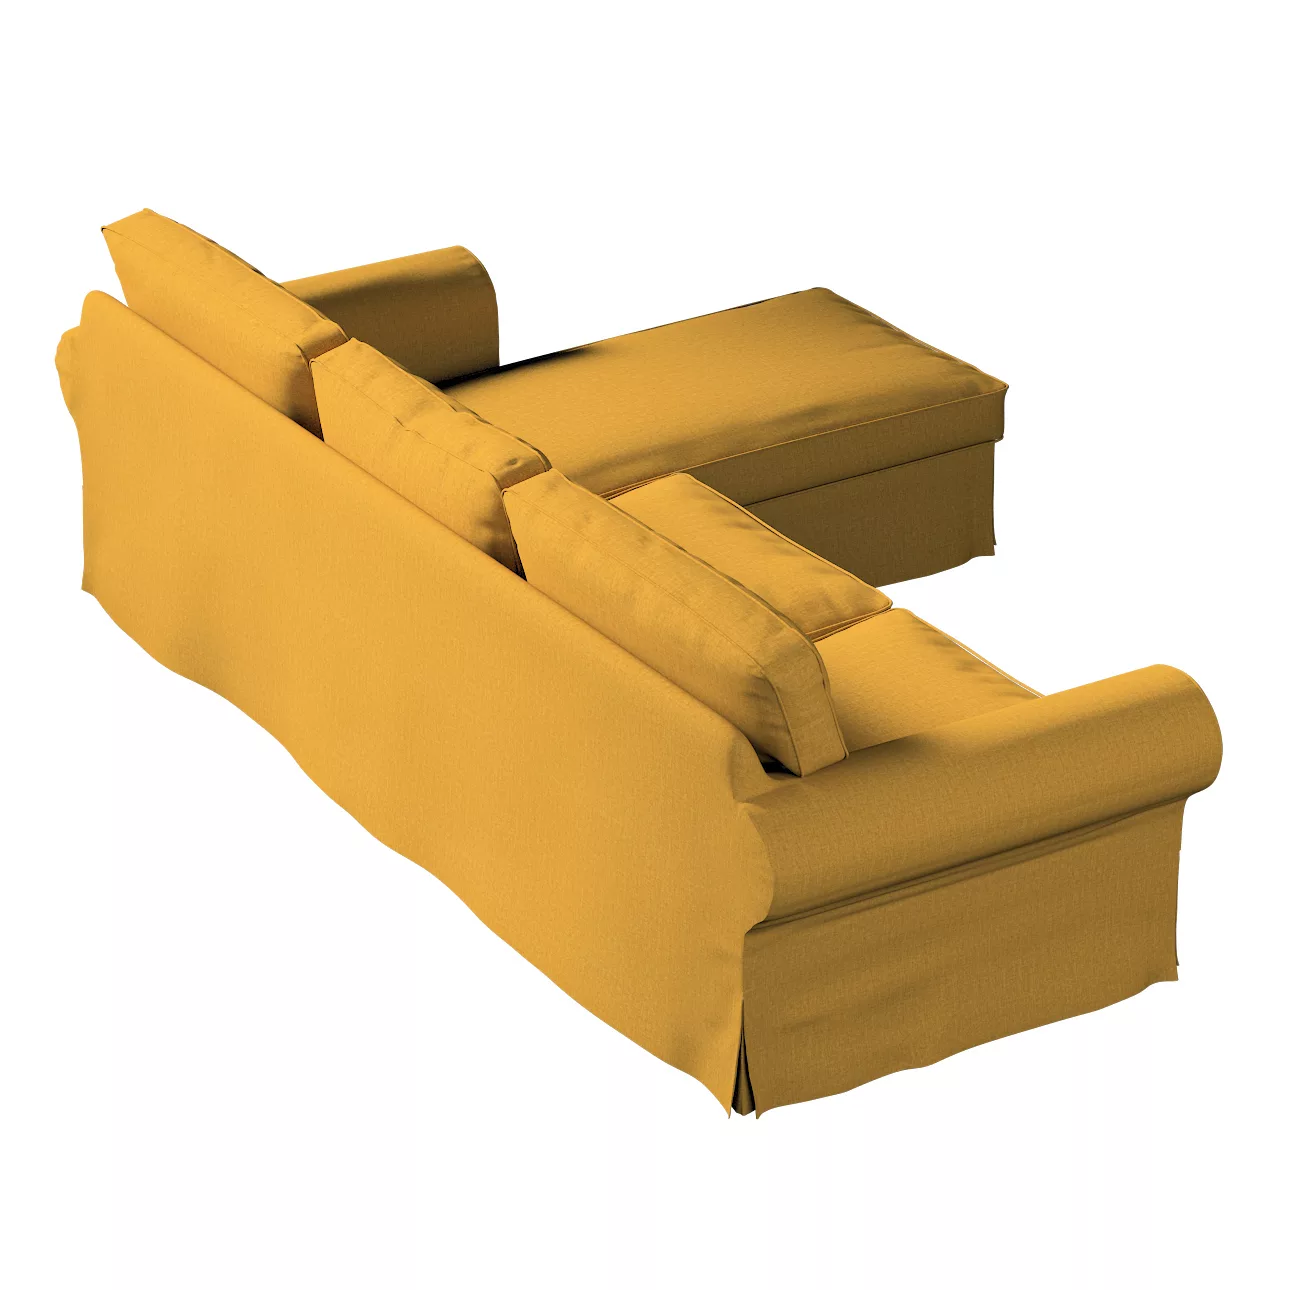 Bezug für Ektorp 2-Sitzer Sofa mit Recamiere, senfgelb, Ektorp 2-Sitzer Sof günstig online kaufen